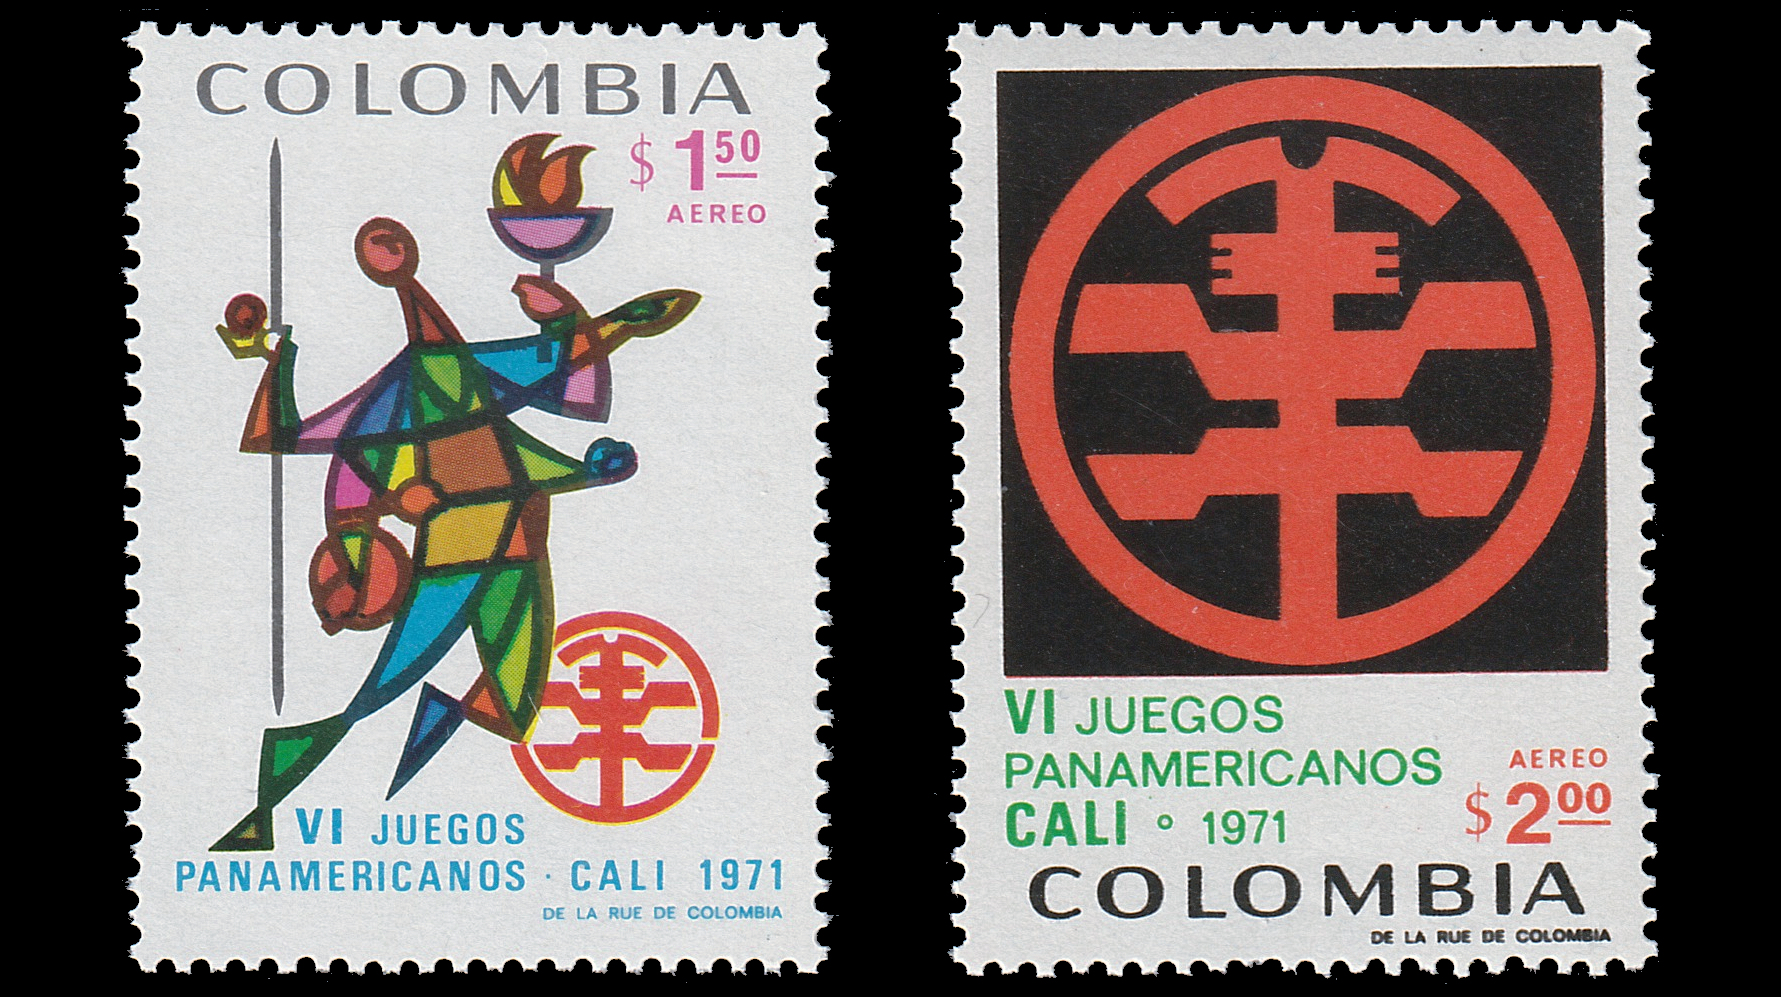 1971 Pan American Games